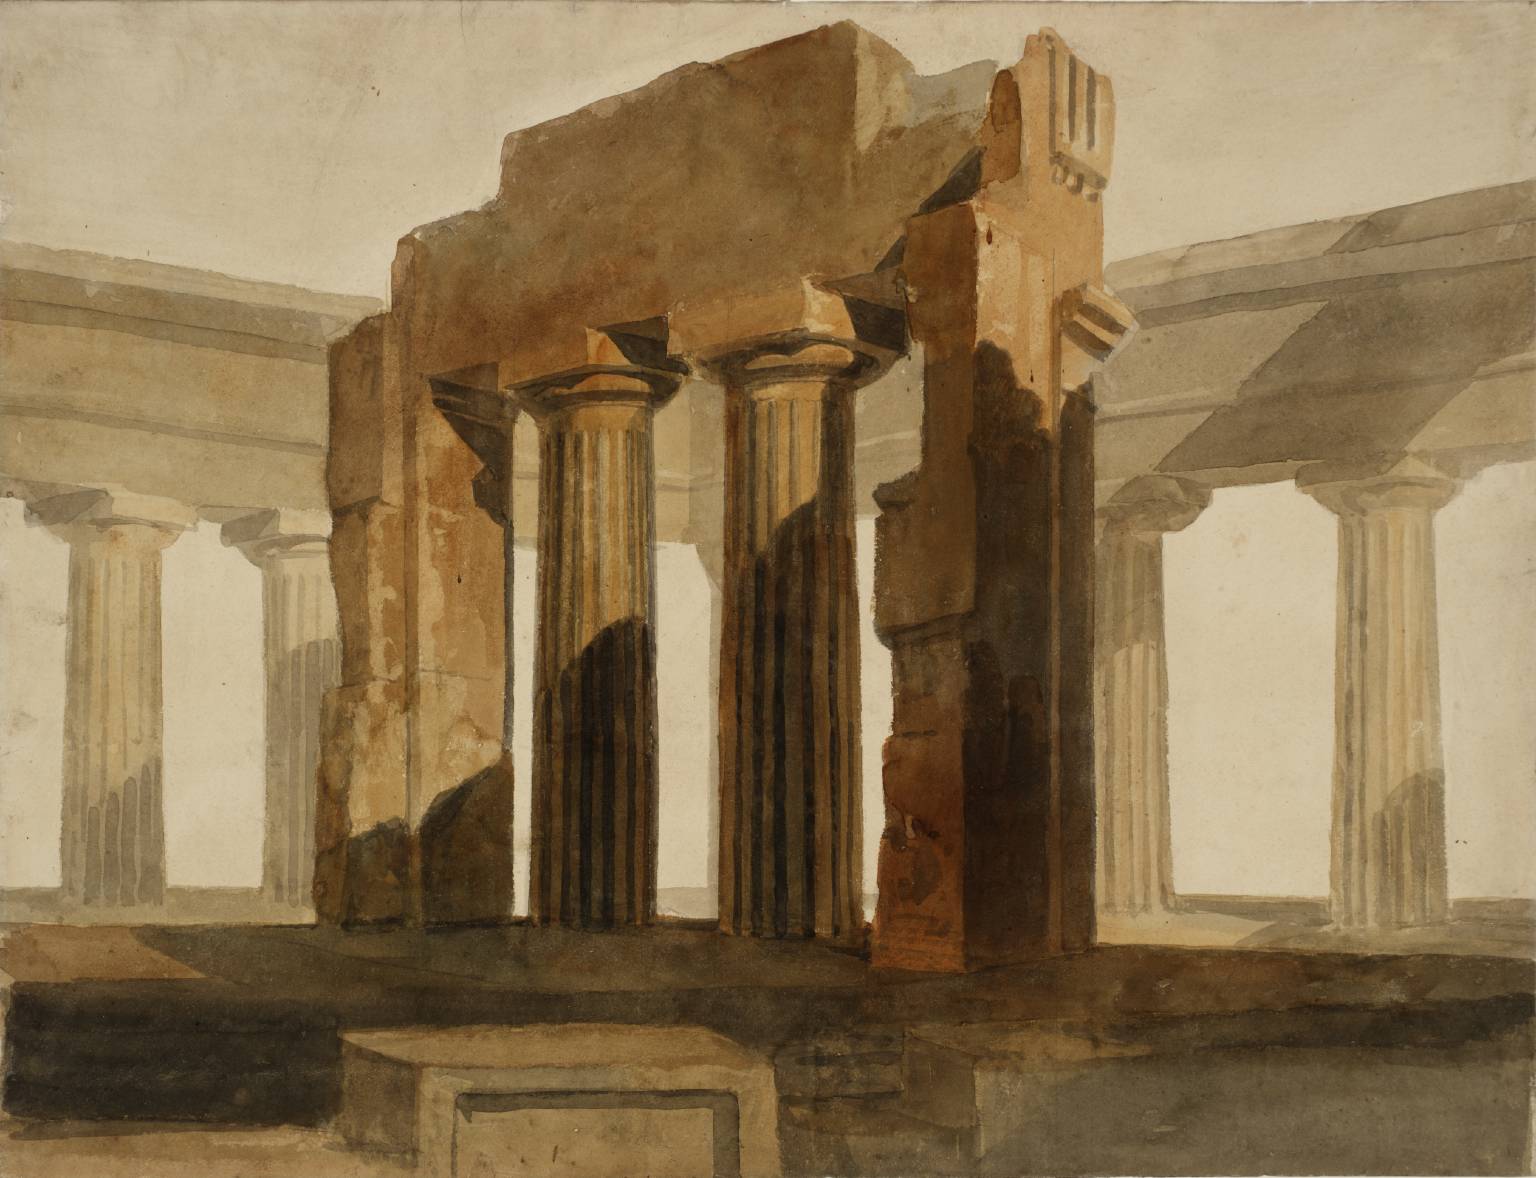 William Turner (Londra, 23 aprile 1775 – Chelsea, 19 dicembre 1851) pittore e incisore inglese, accentua i blocchi di luce ed ombra nelle sue vedute sui templi di Paestum, che risalgono al 1825.